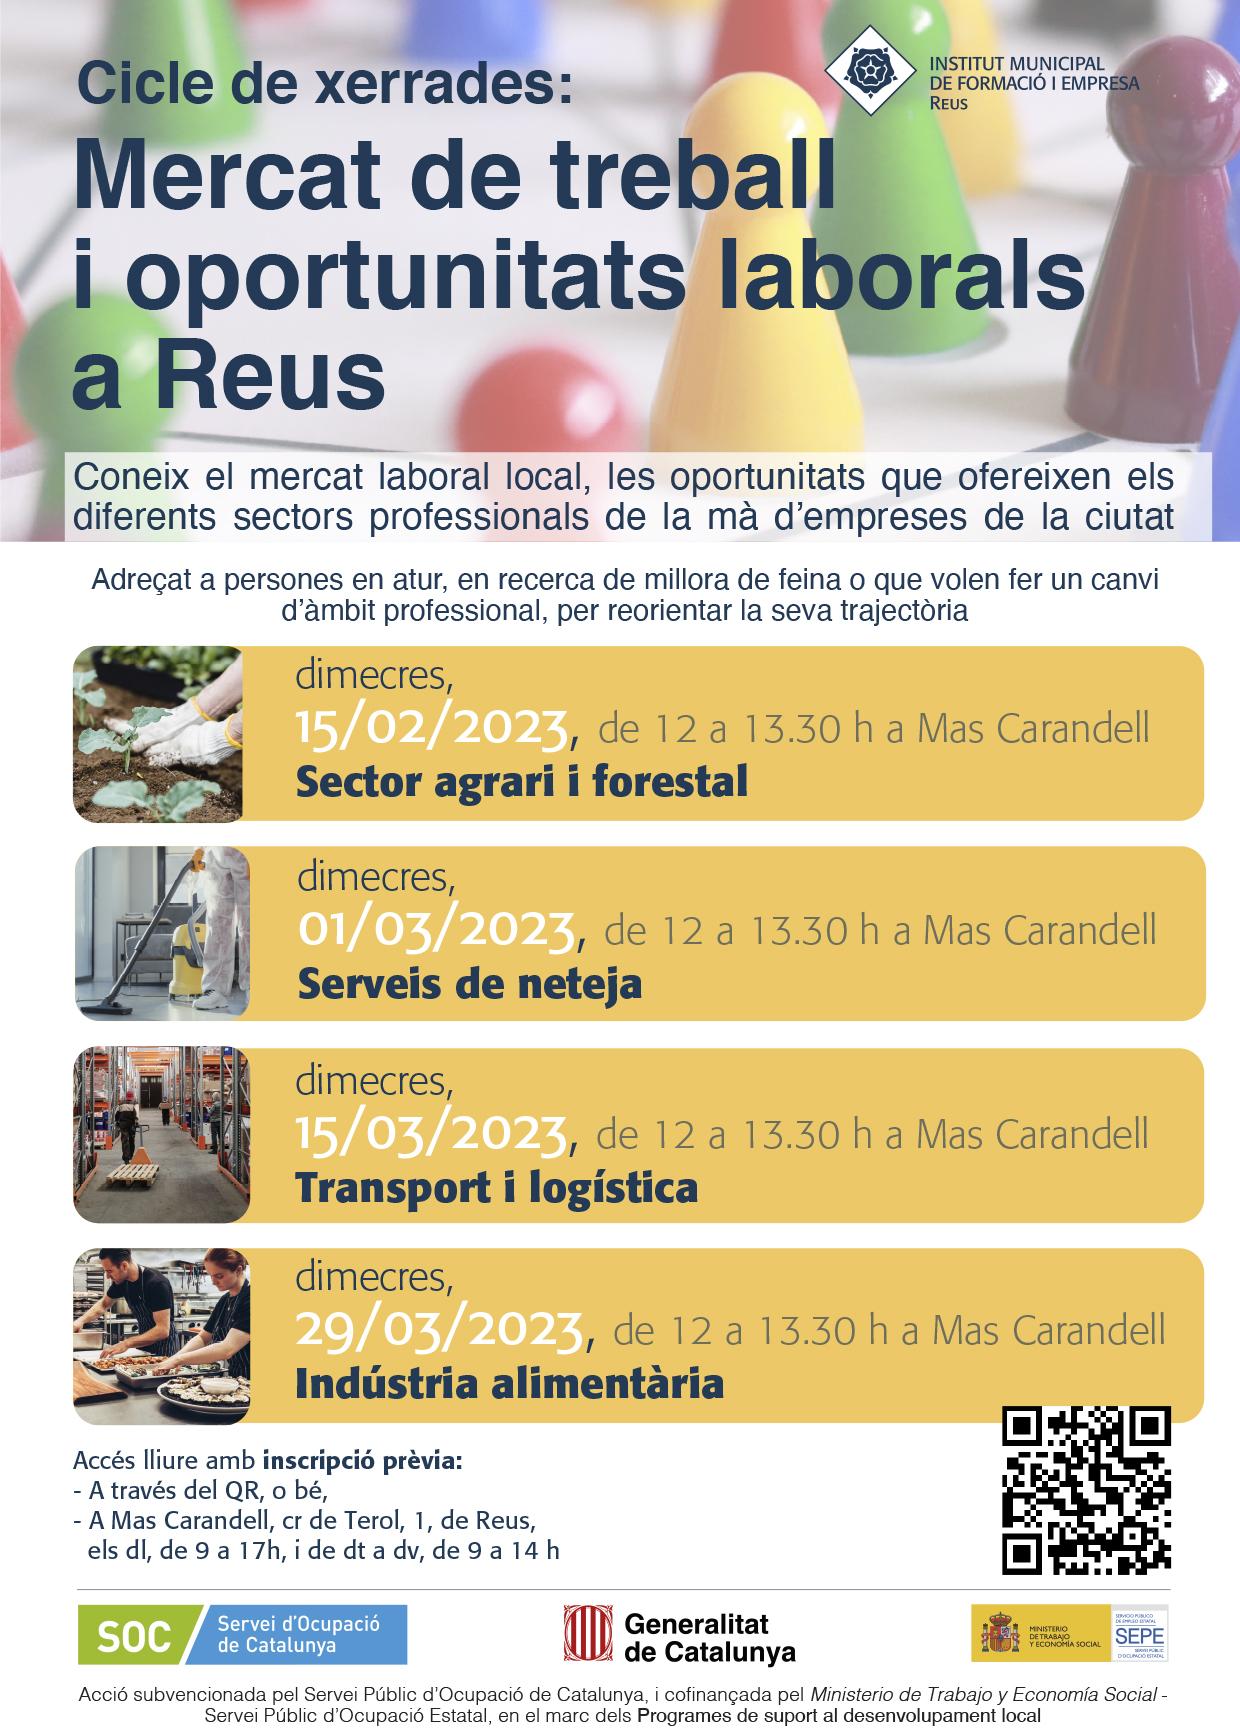 Mercat de treball i oportunitats laborals a Reus. Transport i logística